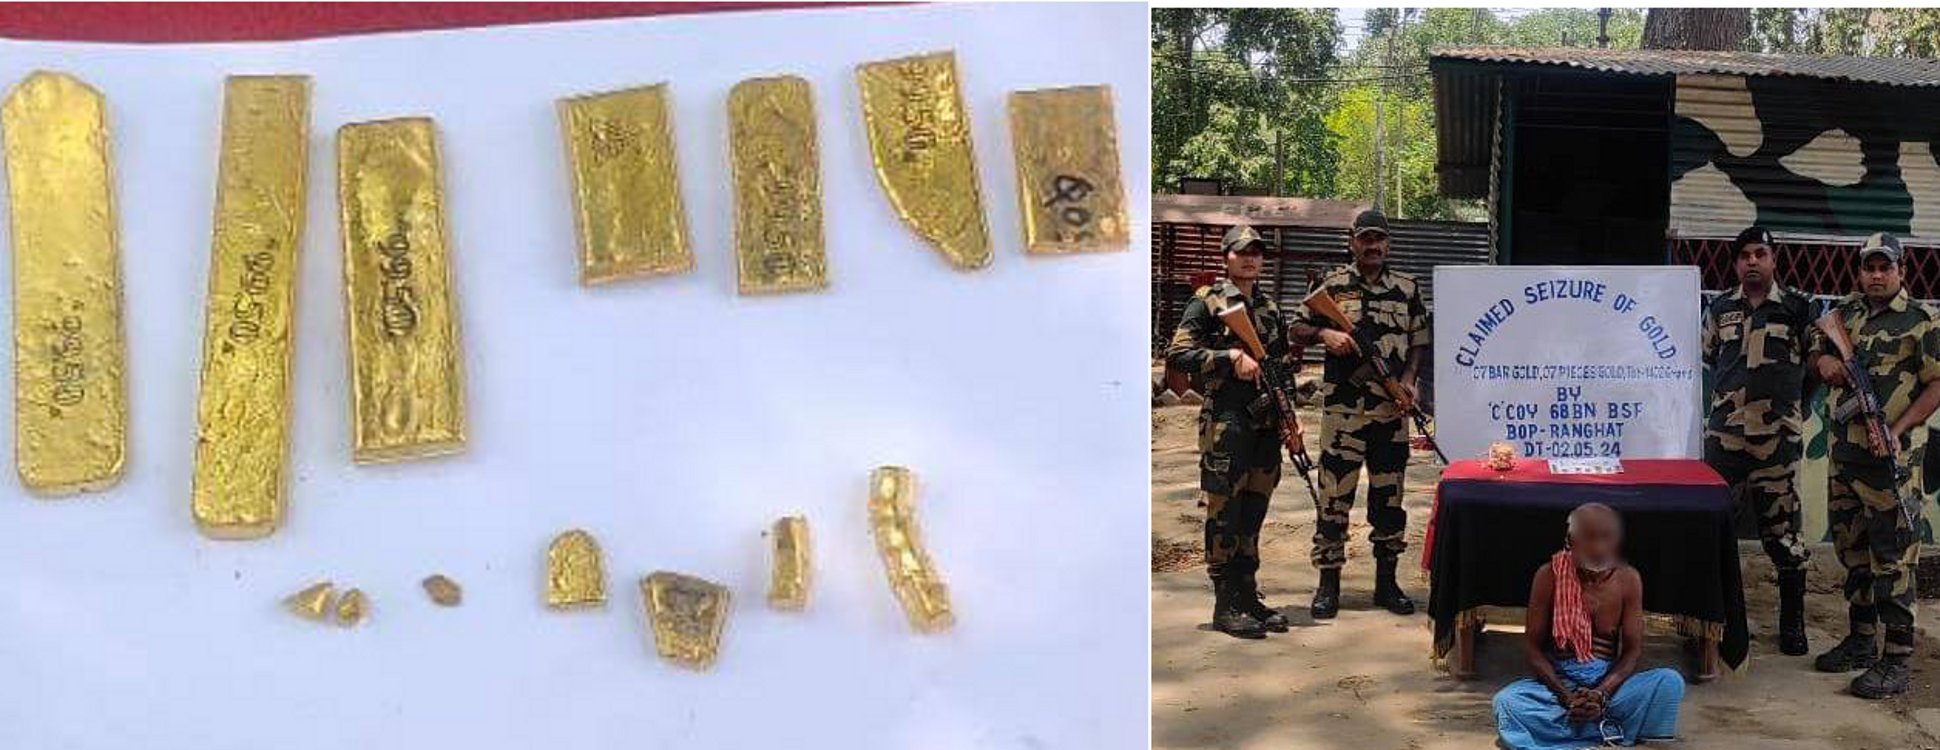 भारत-बांग्लादेश अंतरराष्ट्रीय सीमा से एक महीने में 5.5 करोड़ रुपये के सोने के
बिस्कुट बरामद